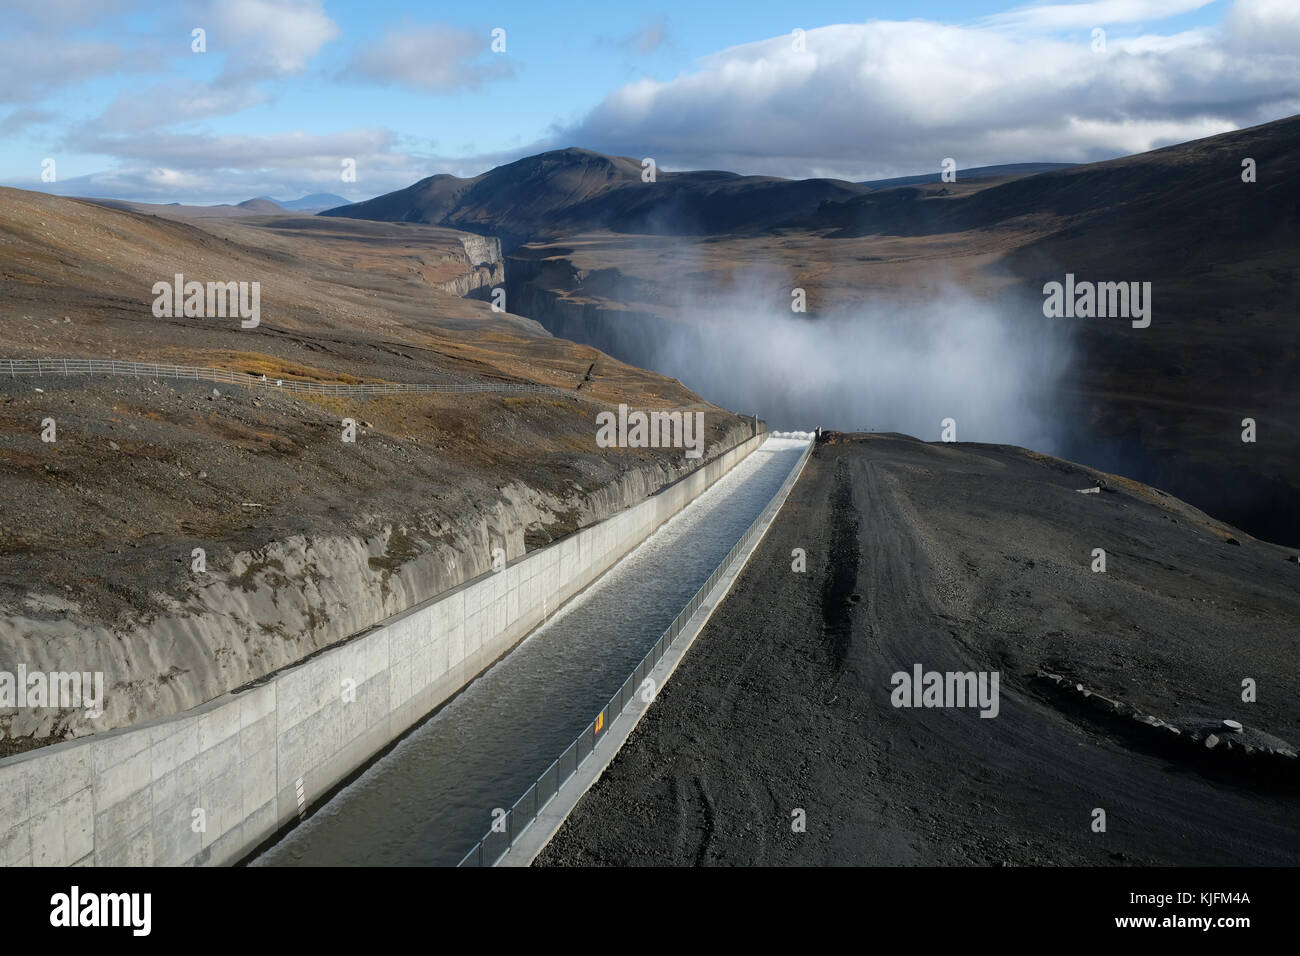 Rejet d'eau du barrage en raison de fortes précipitations qui s'écoulent dans le canyon de Hafrahvammagljufur de la centrale hydroélectrique de Karahnjukar (Karahnjukavirkjun), Islande orientale Banque D'Images